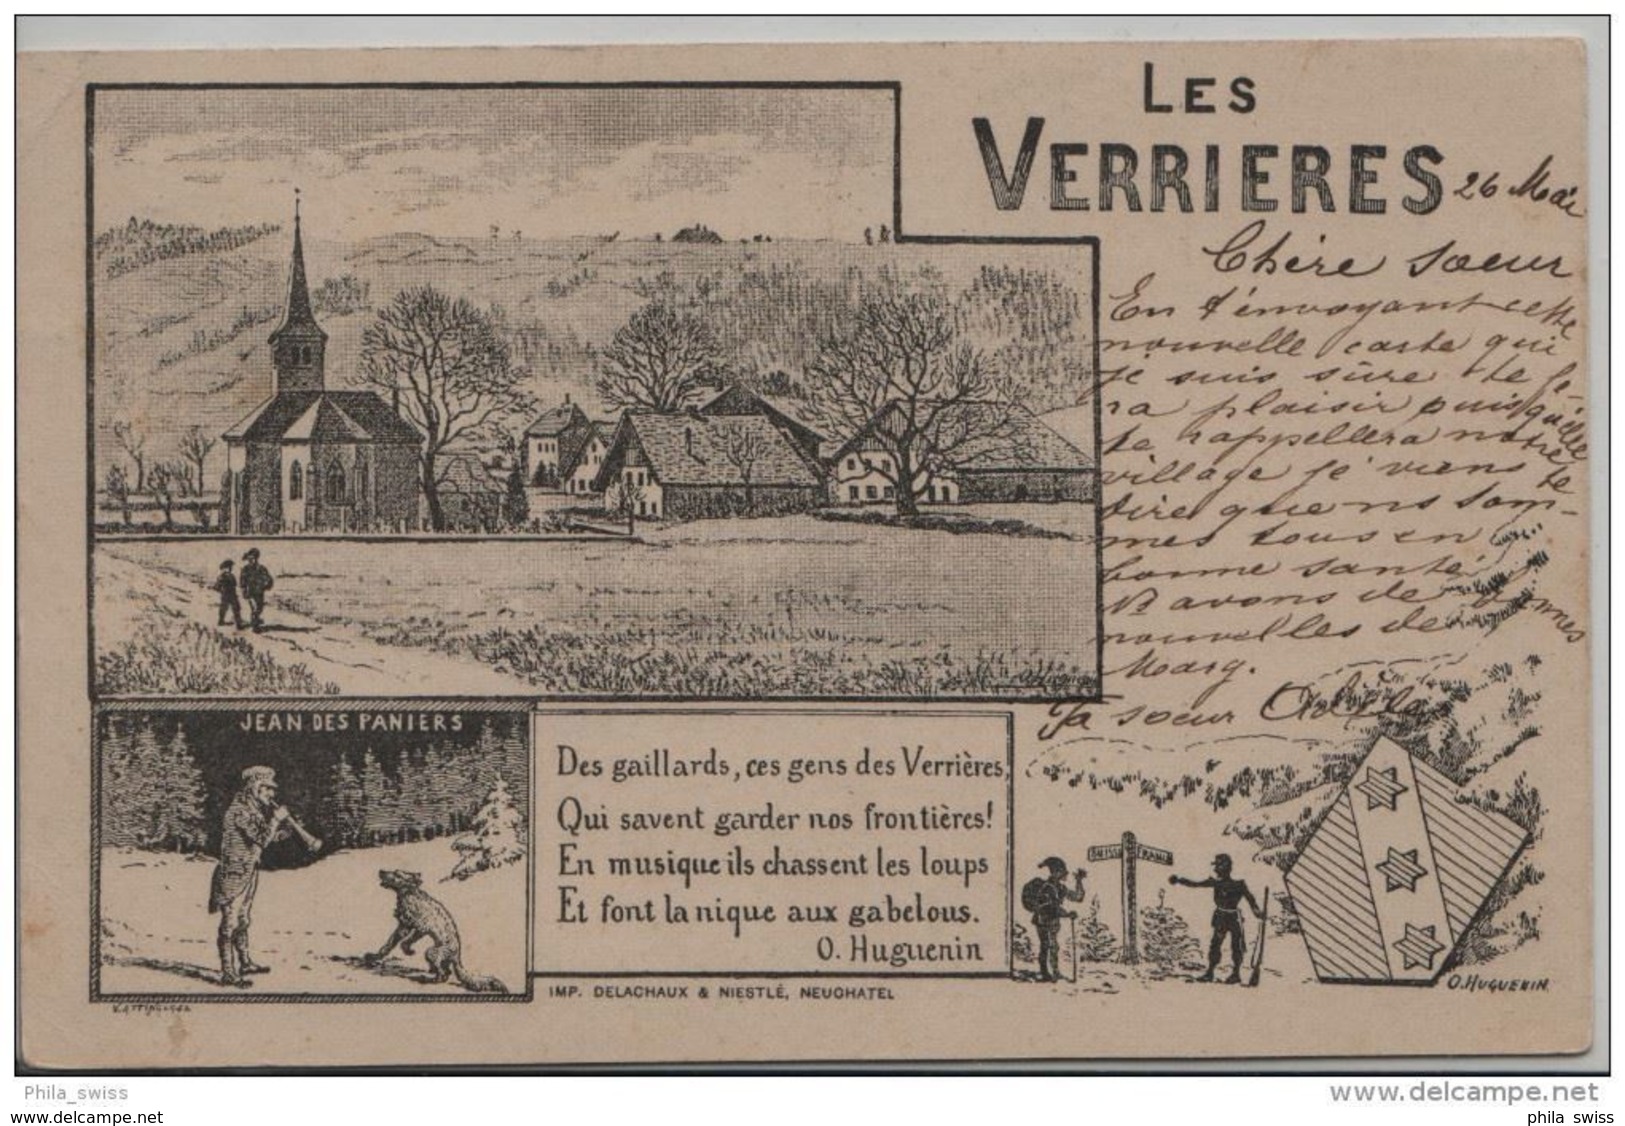 Verrières, Les - En 1899 - Illustré Par Verrières, Les - En 1899 - Illustré Par O. Huguenin - Les Verrières